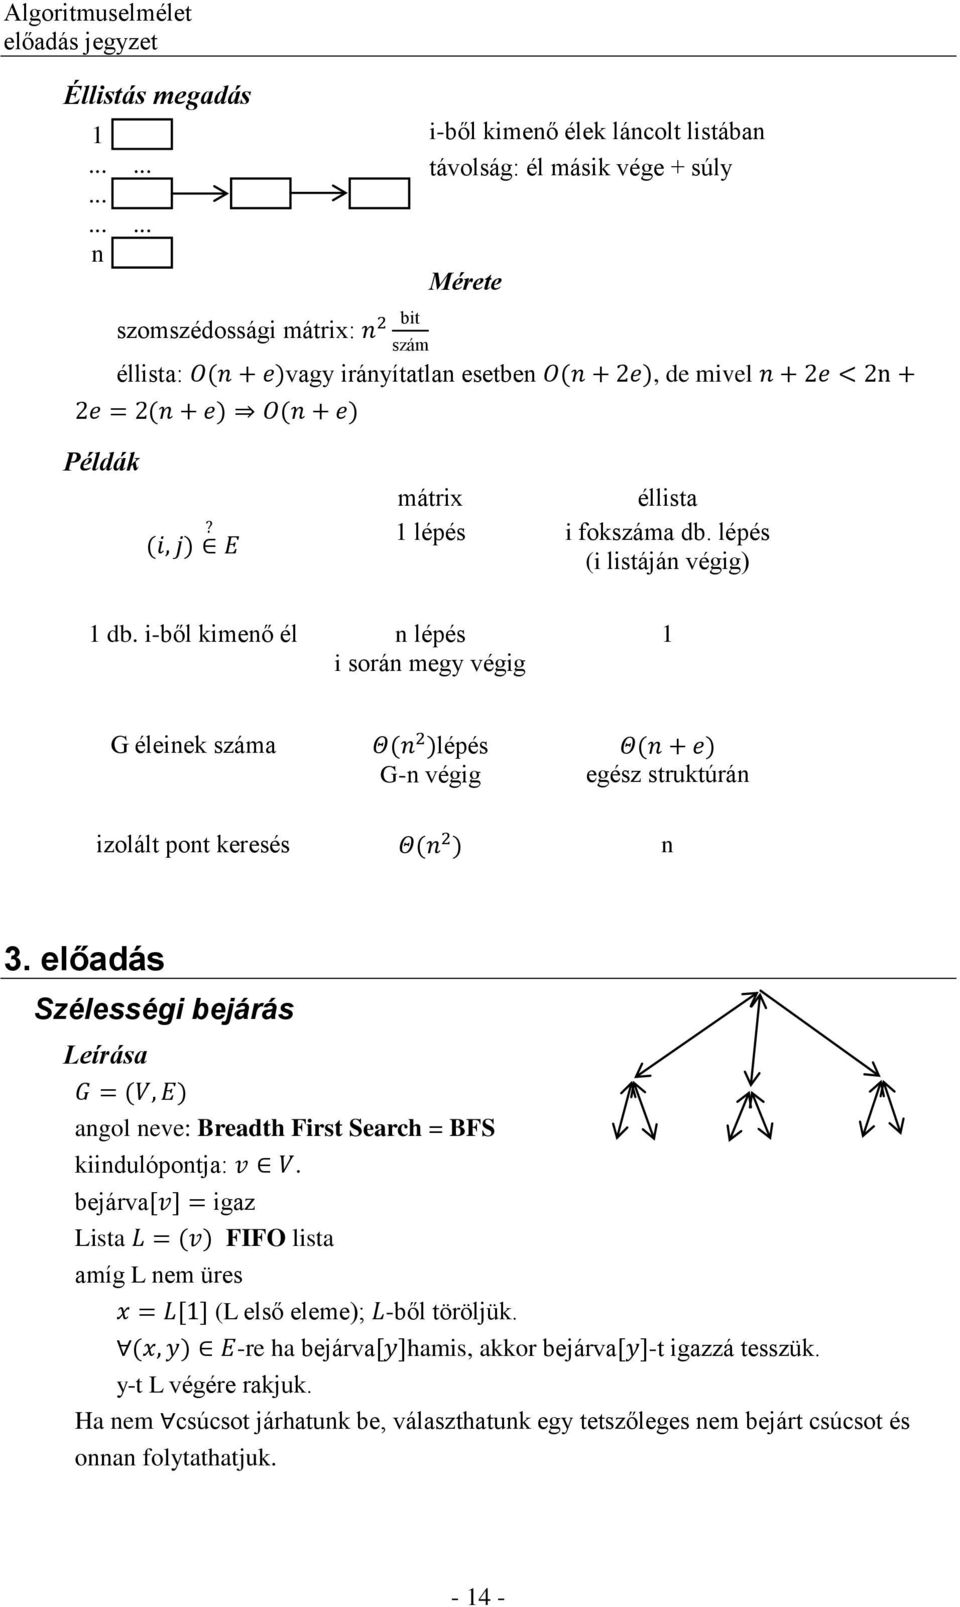 Tartalomjegyzék. Algoritmuselmélet előadás jegyzet - PDF Ingyenes letöltés